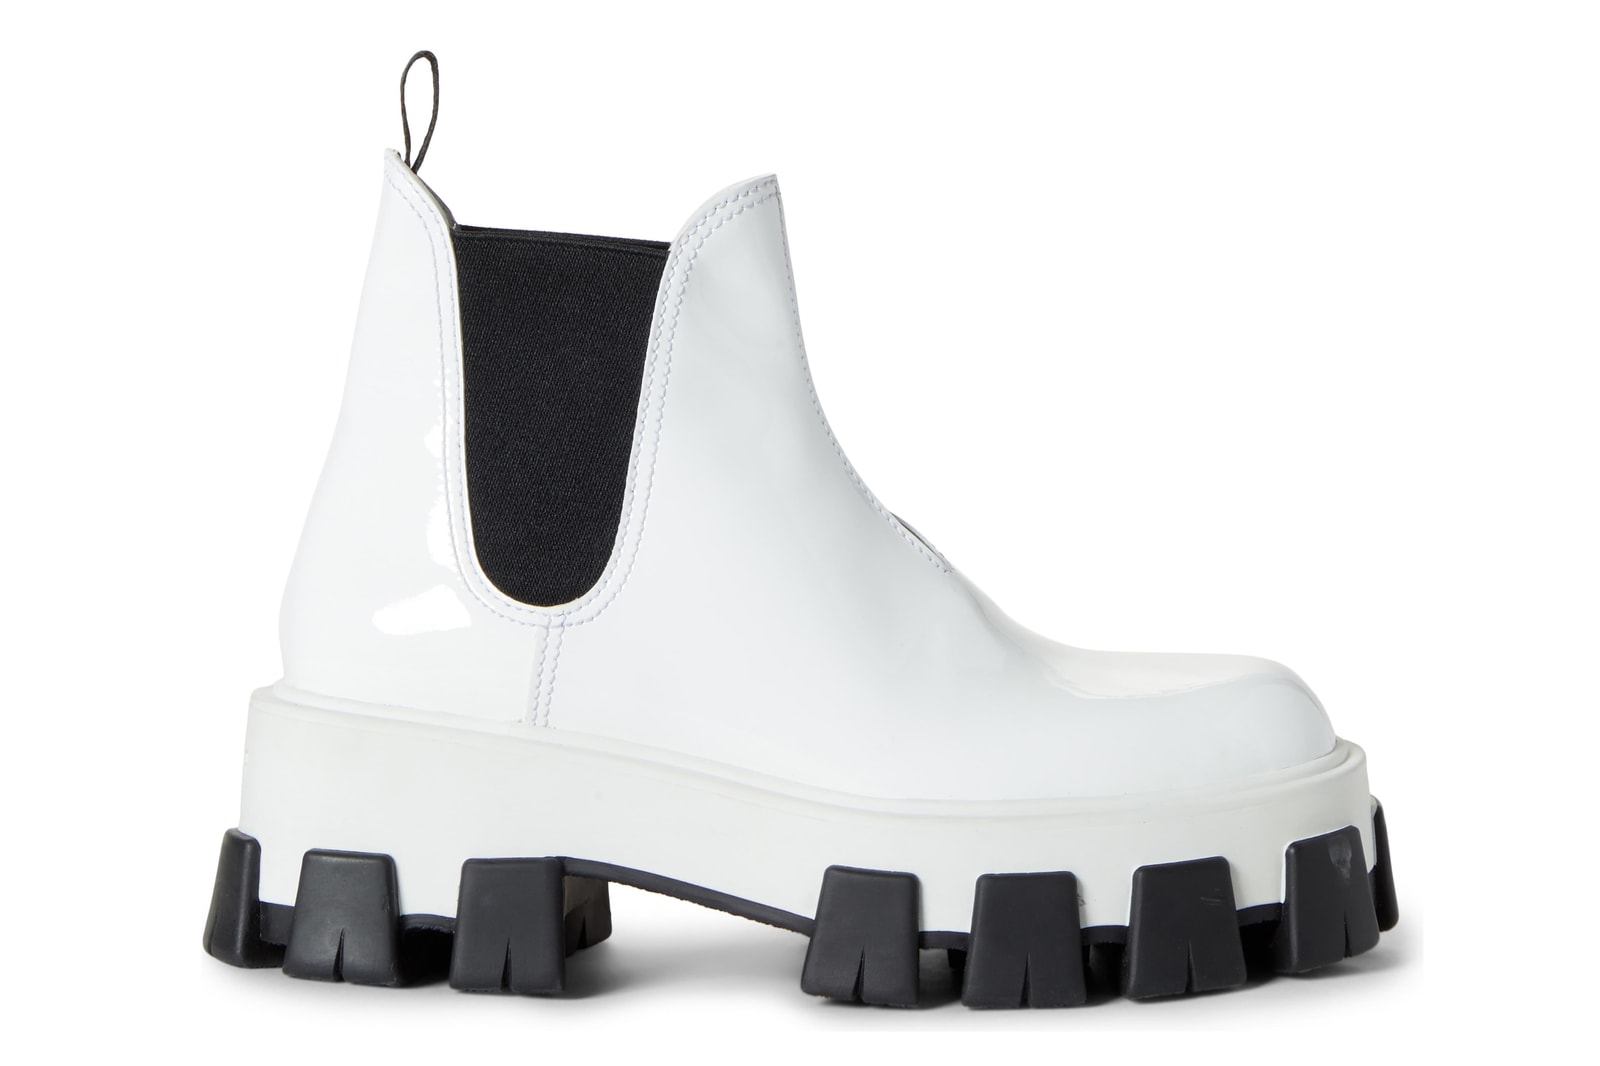 Best Stylish Waterproof Winter Boots Gucci Converse Chloe